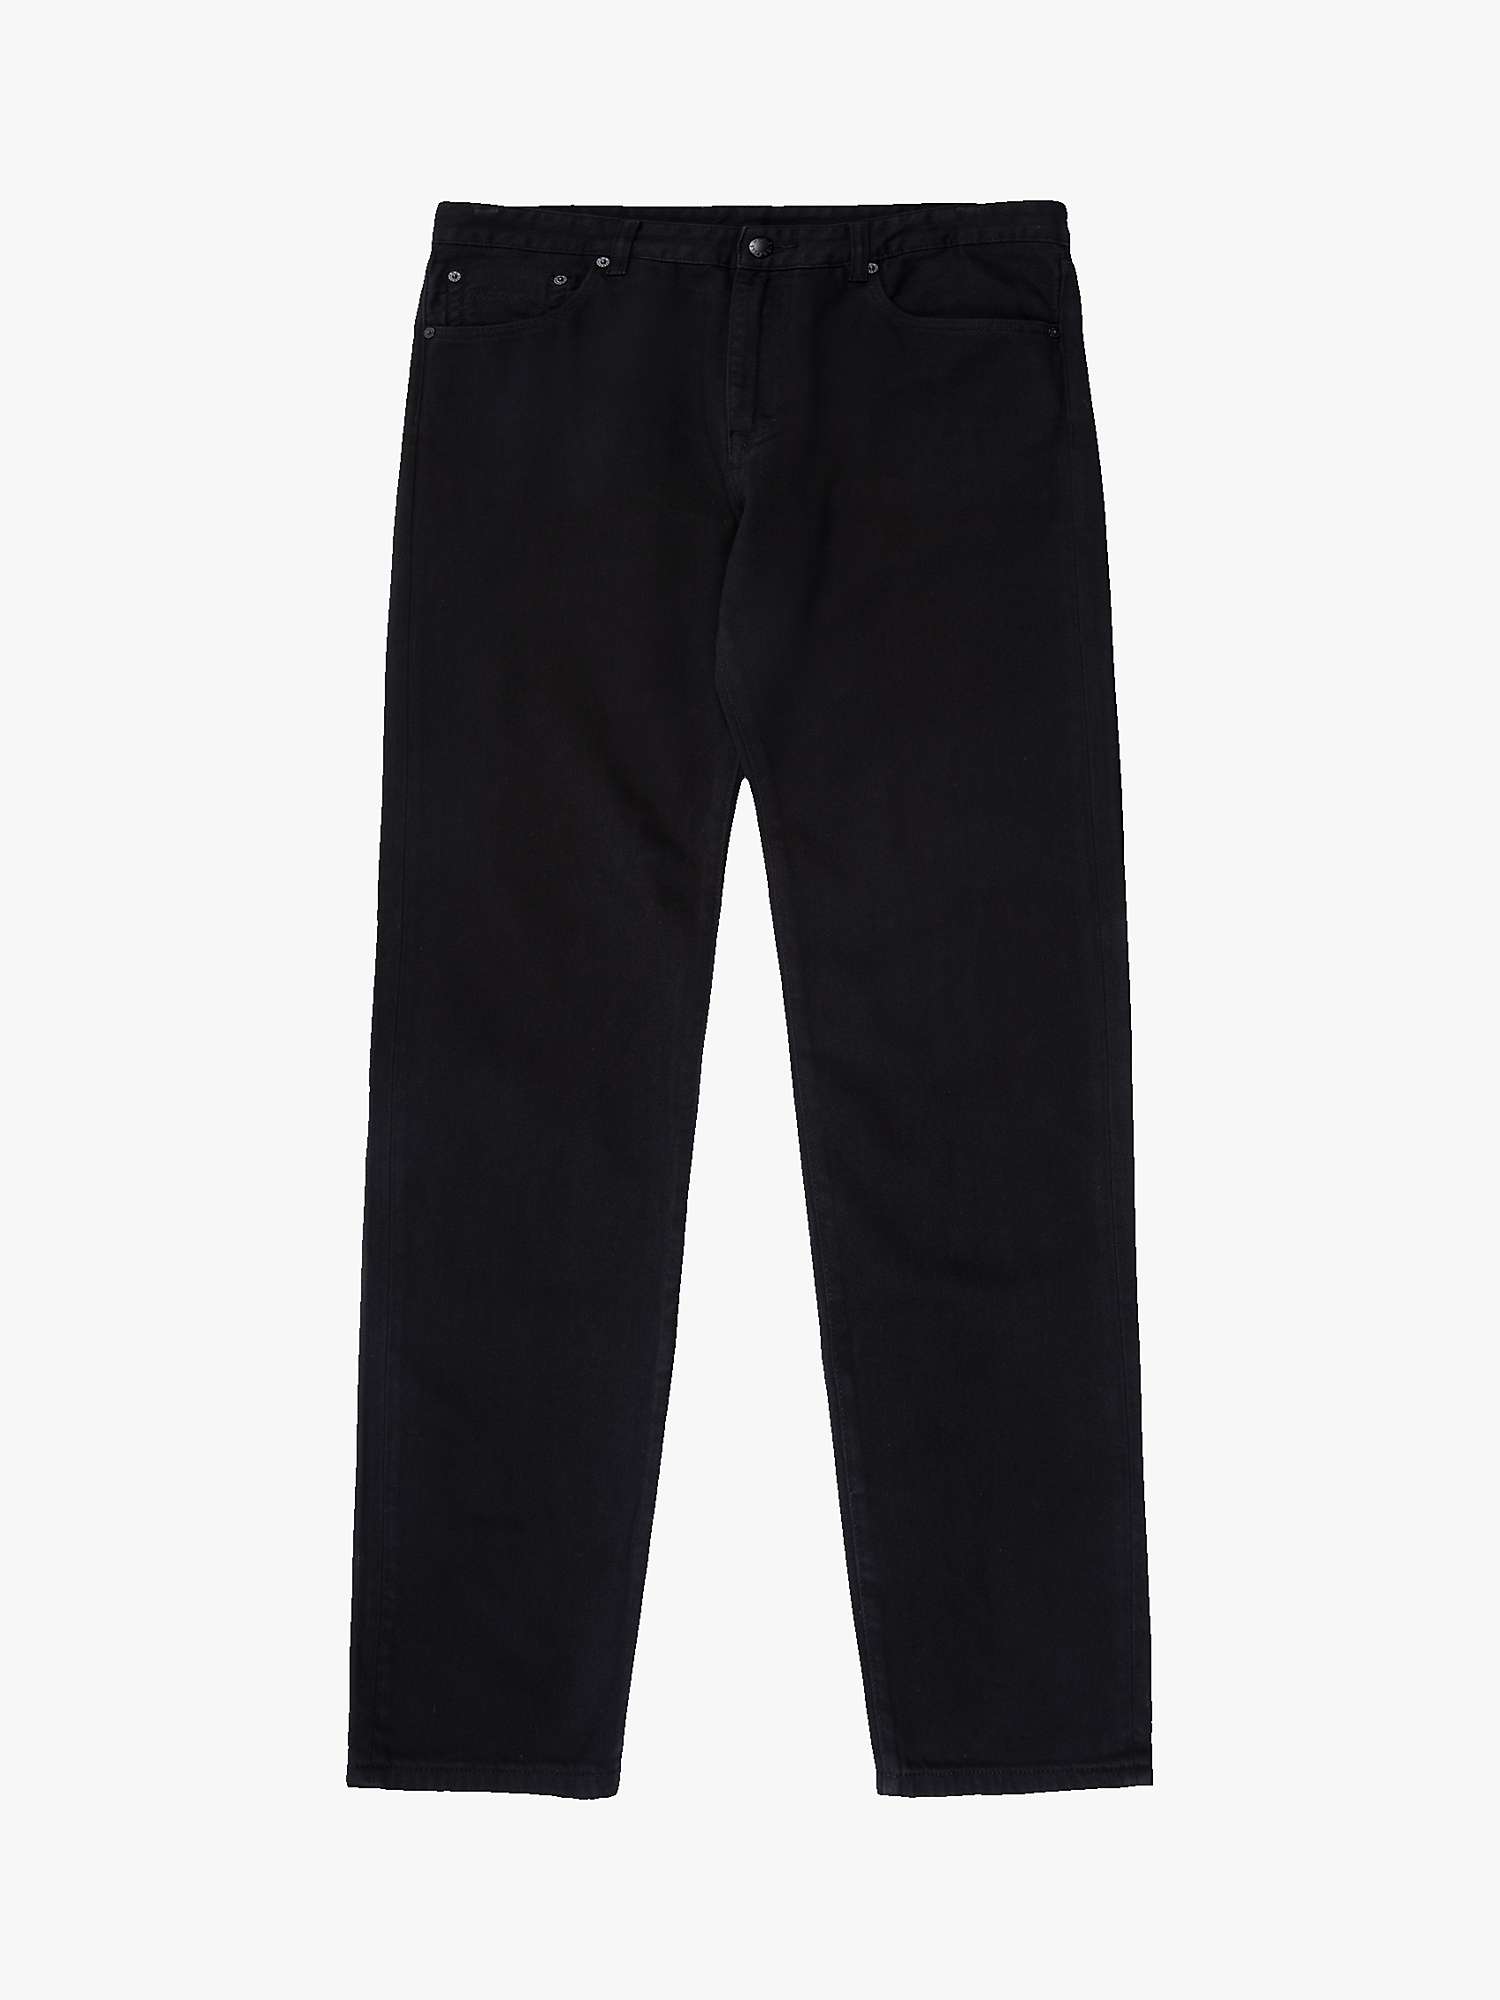 Buy M.C.Overalls 5 Pocket Regular Fit Denim Jeans Online at johnlewis.com